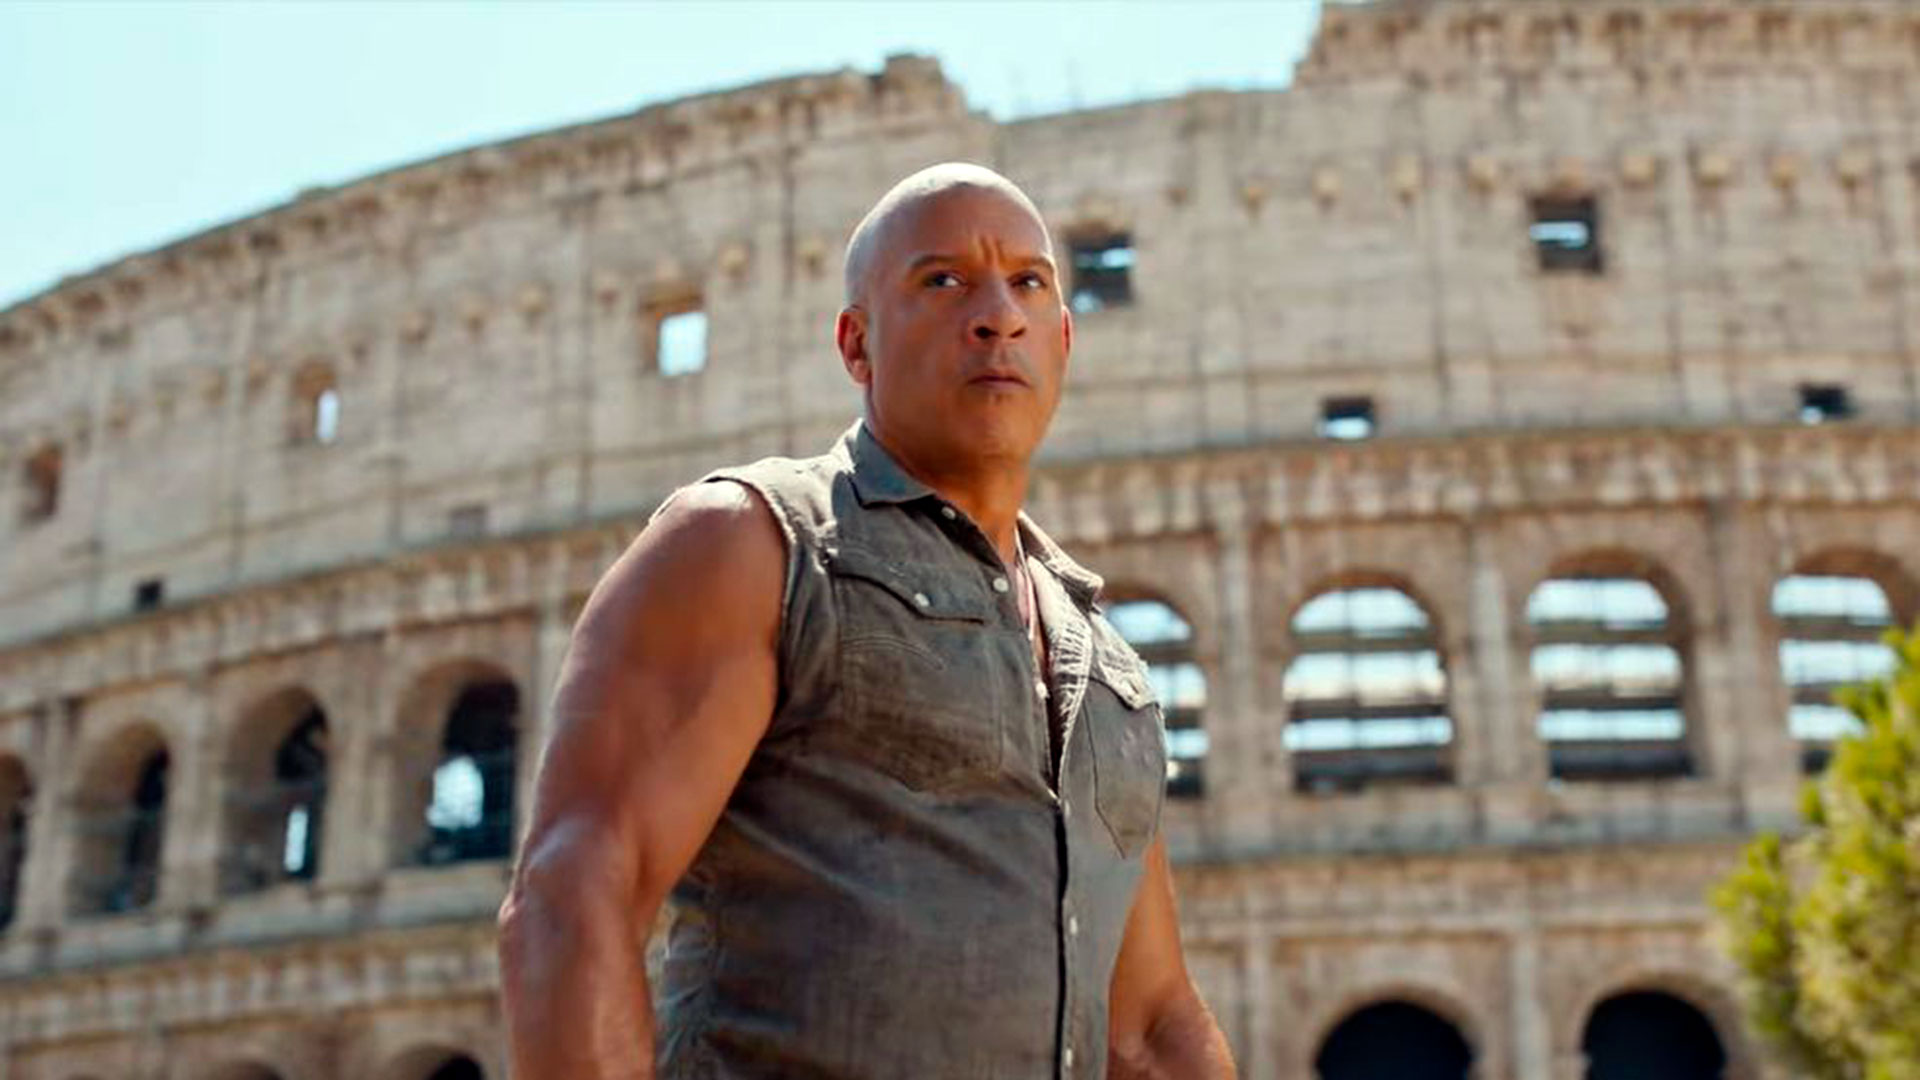 Vin Diesel imparable en la décima entrega de "Rápido y furioso" Fast X - Tráiler oficial - Cines